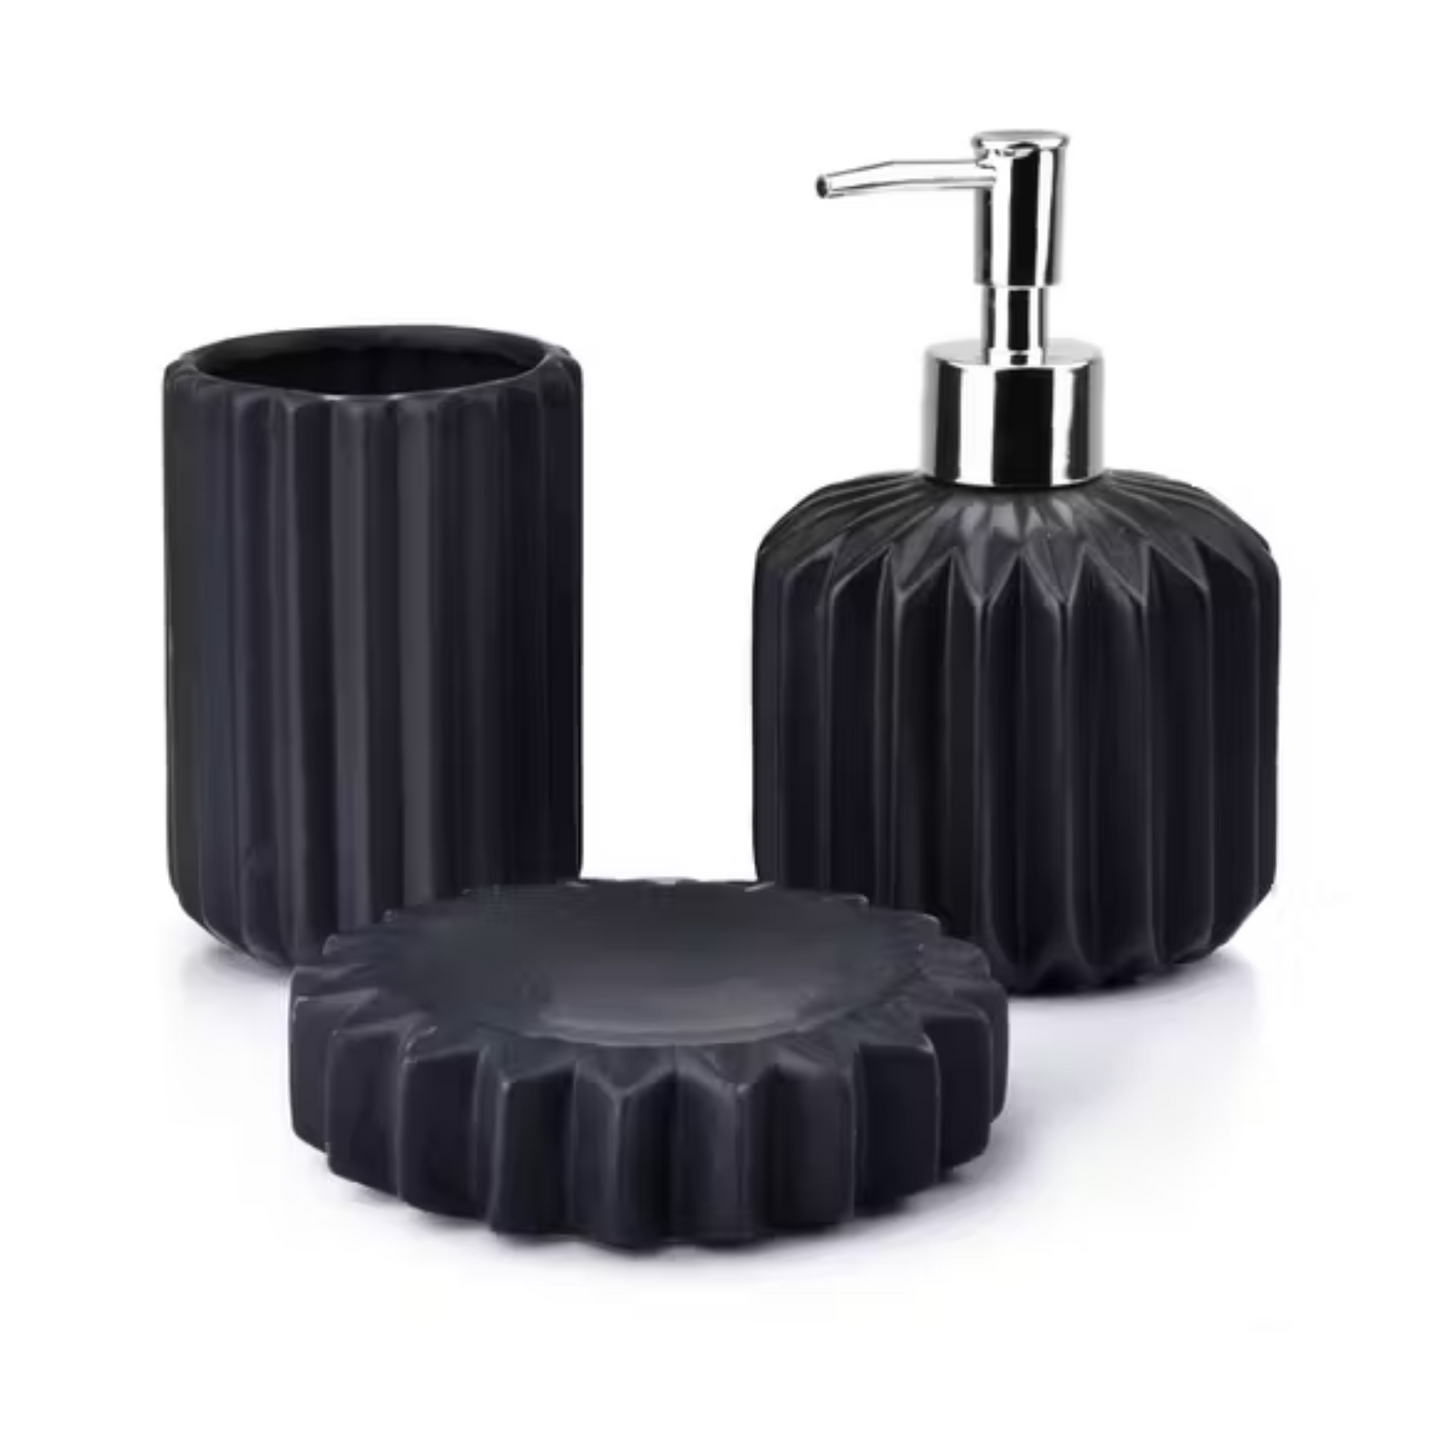 Keramik Badezimmerset, schwarz, 3-teilig